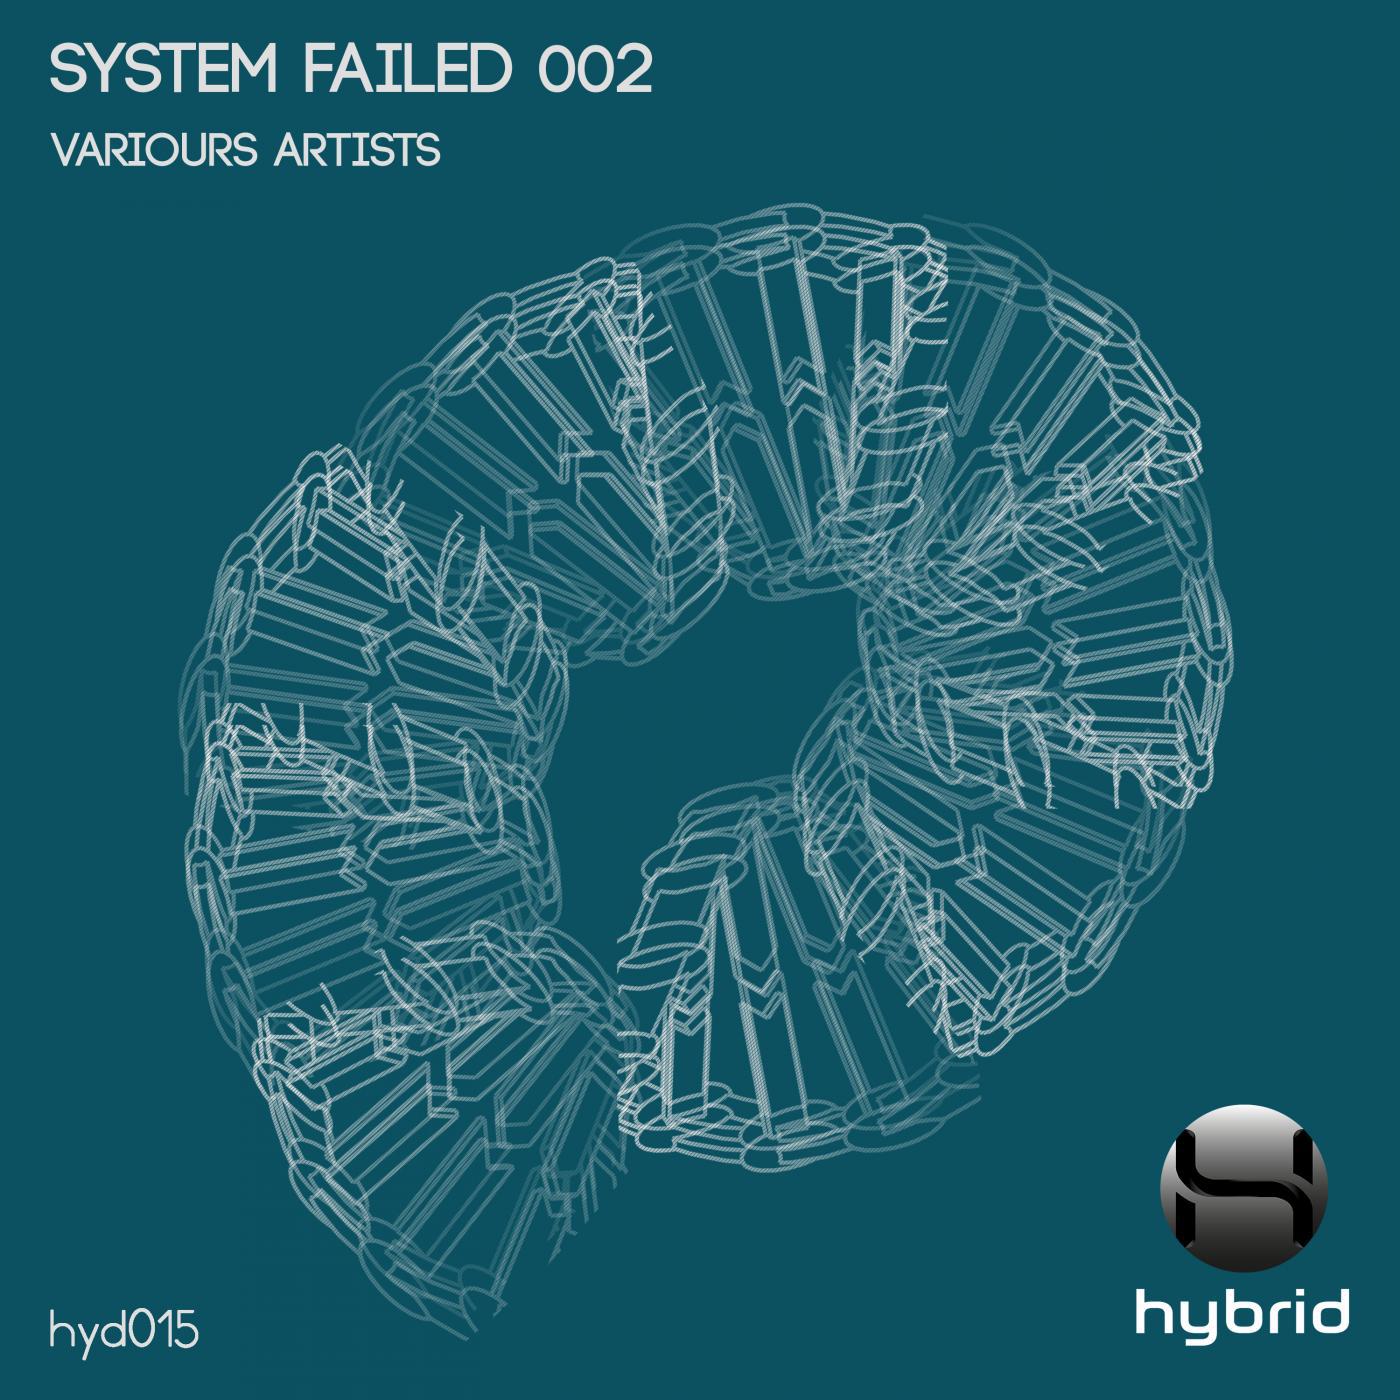 System Failed 002